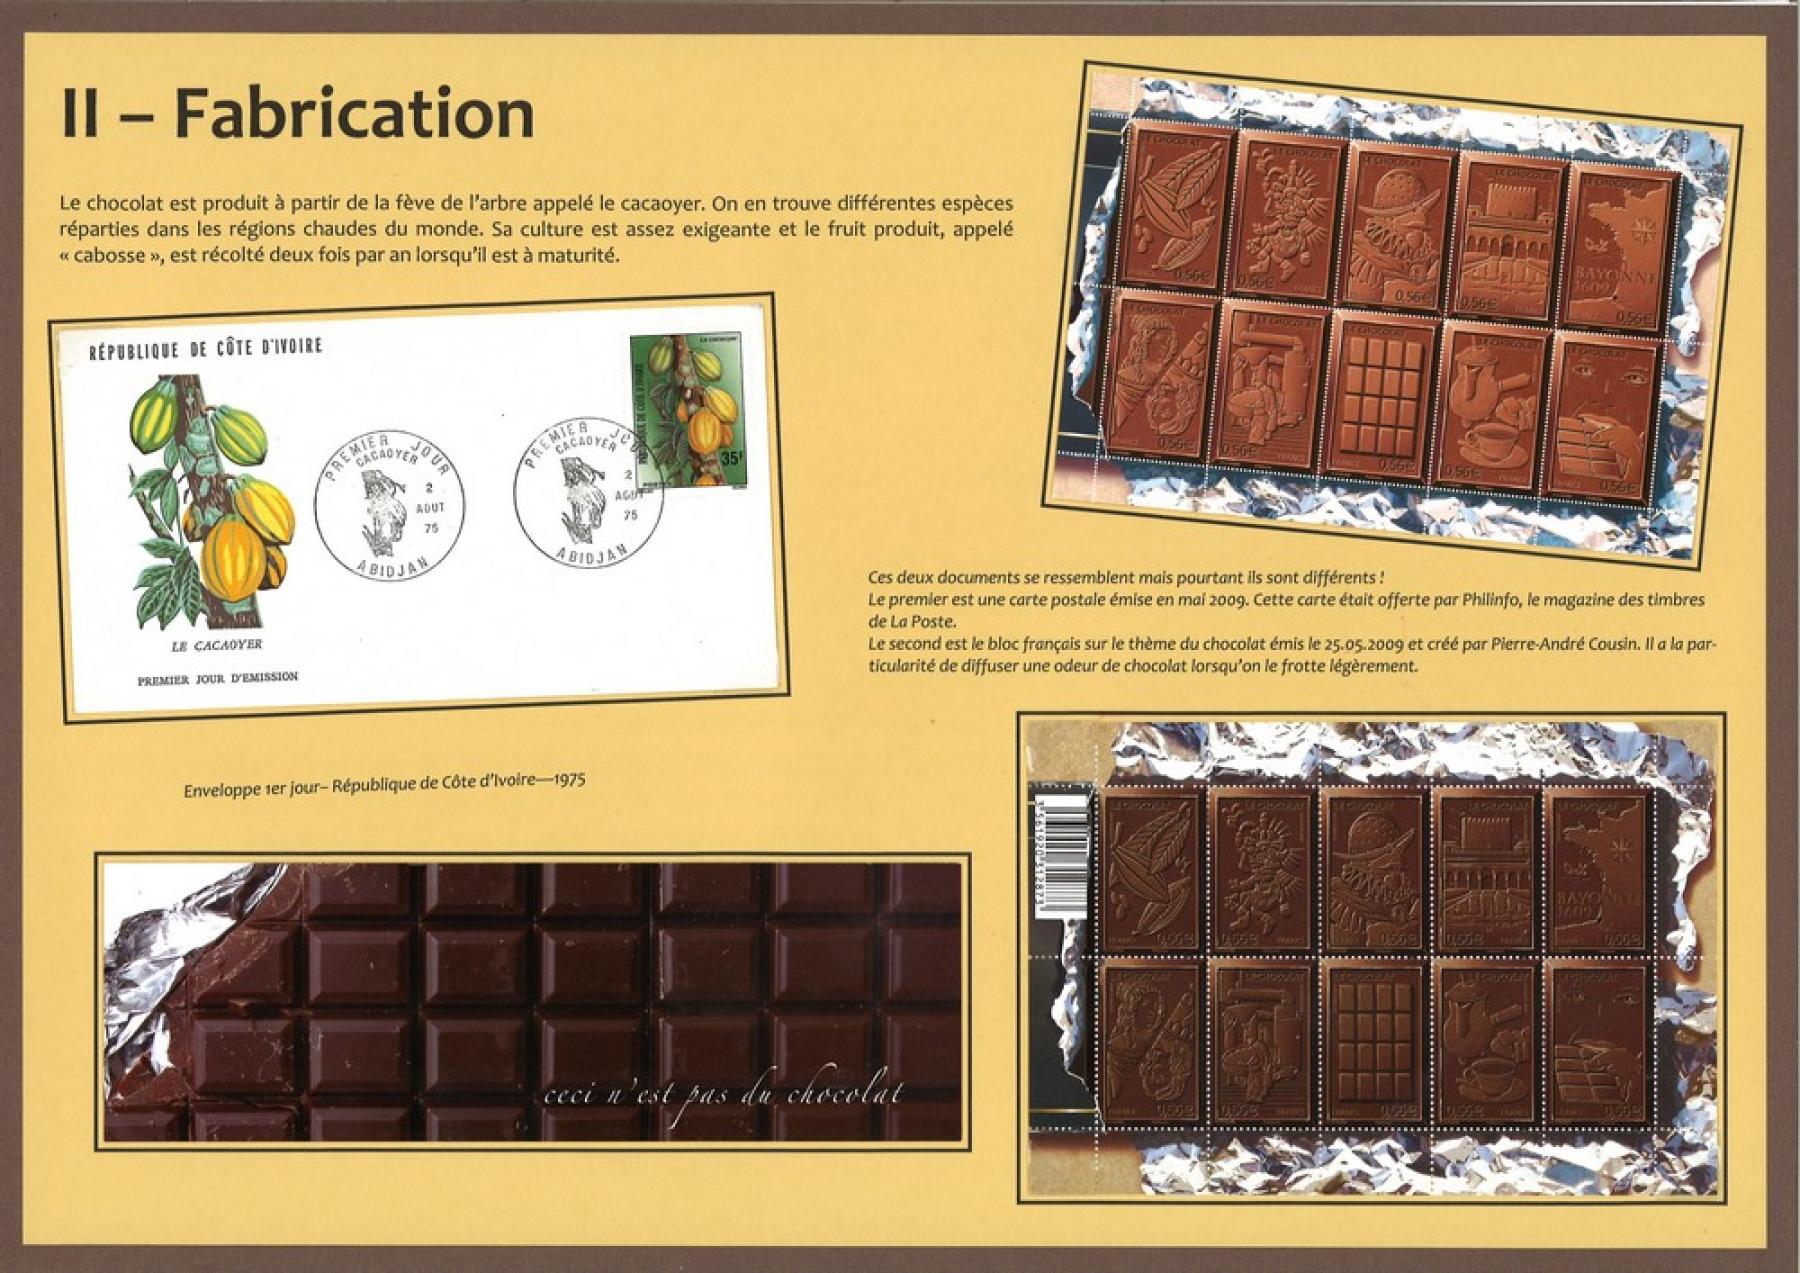 Le chocolat p. 3